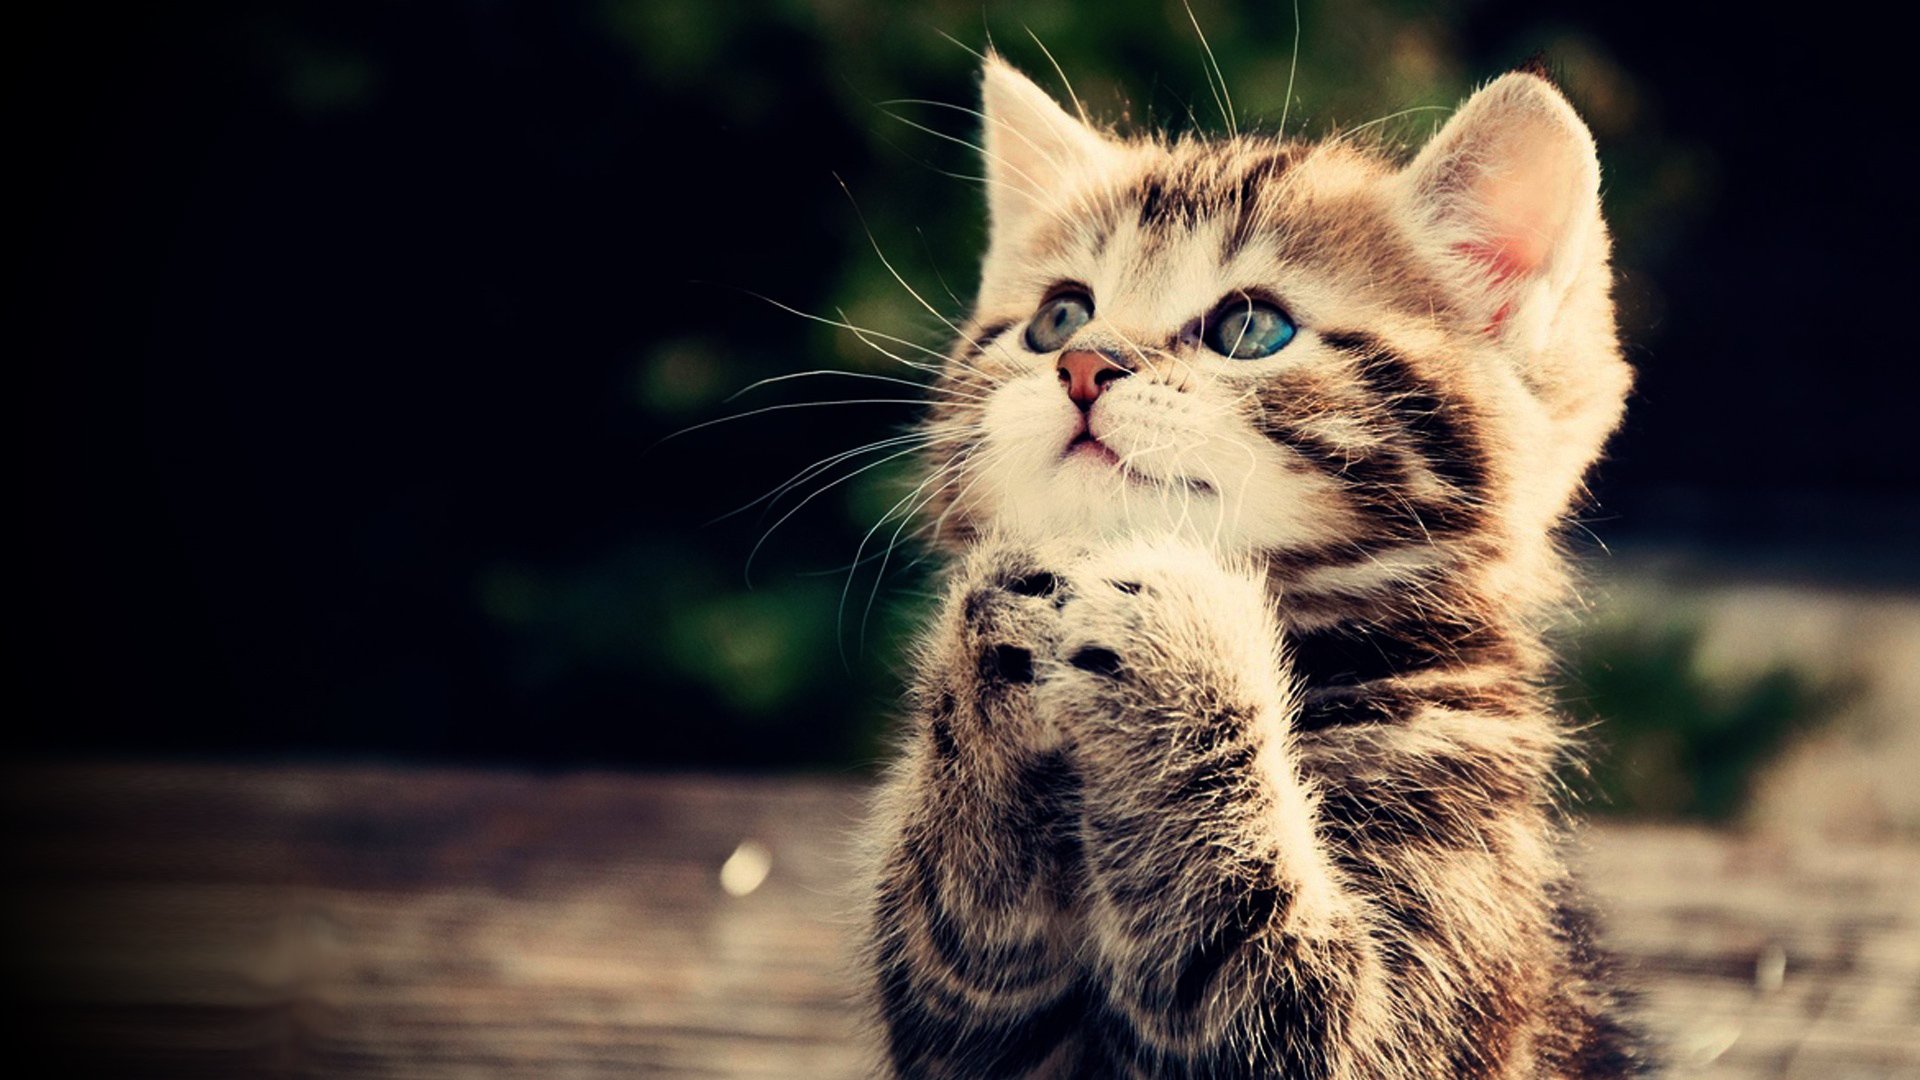 Praying kitten Full HD wallpaper cute animal picture 1080p download 1920x1080